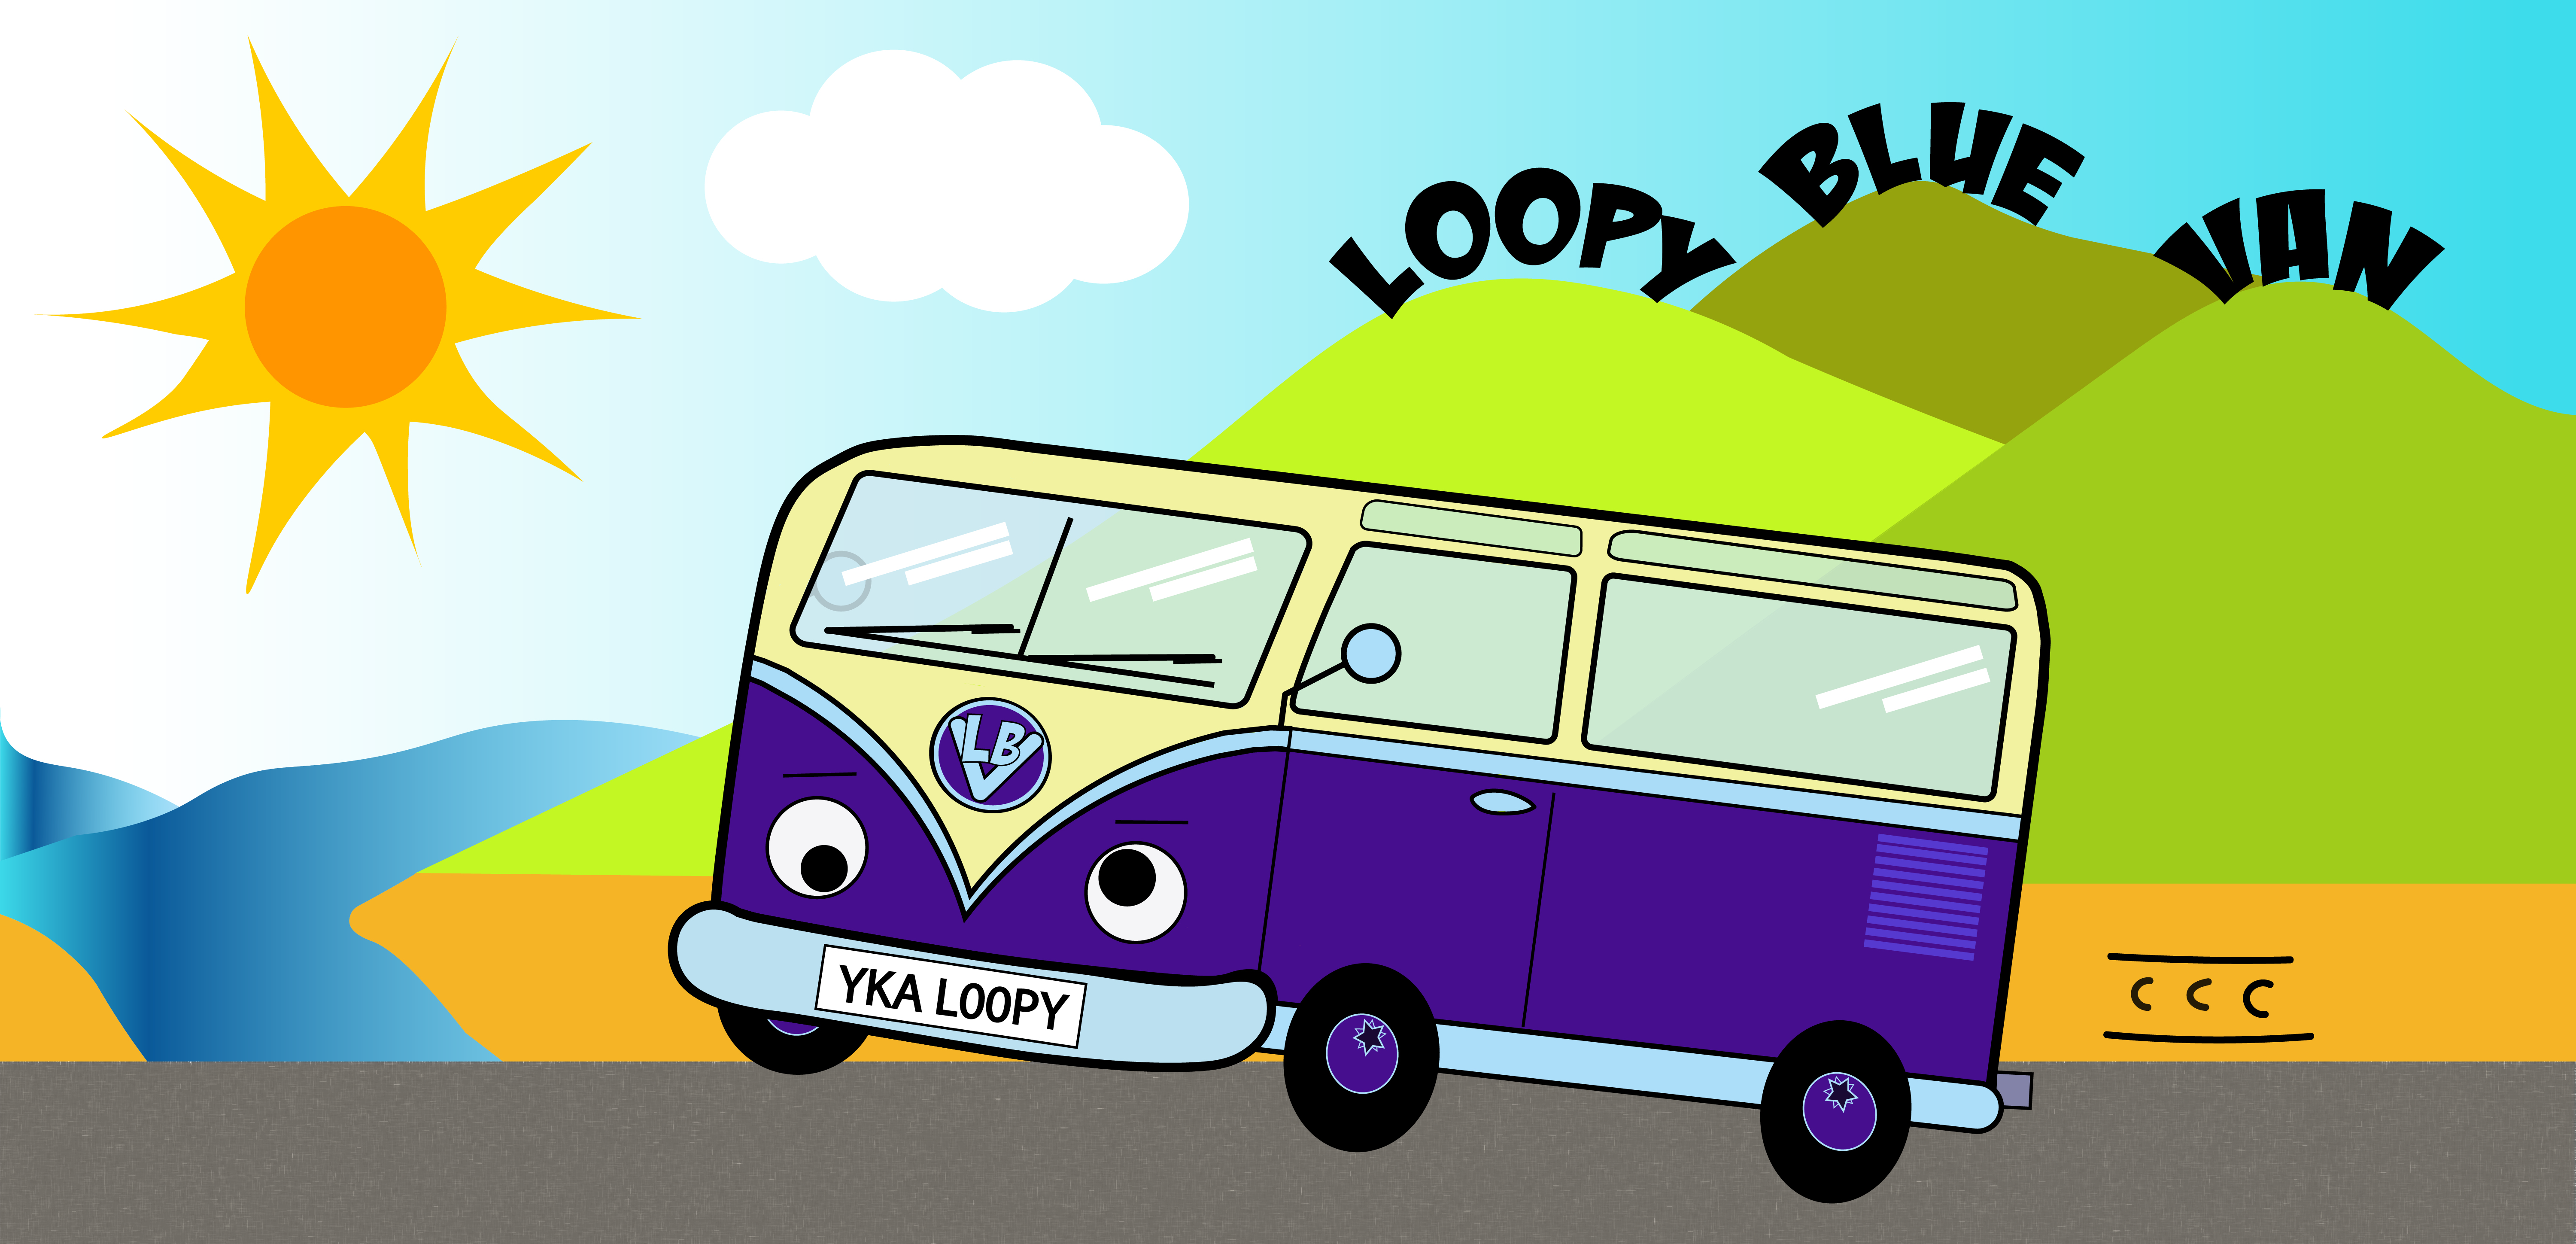 BA Loopy Blue Van Beer